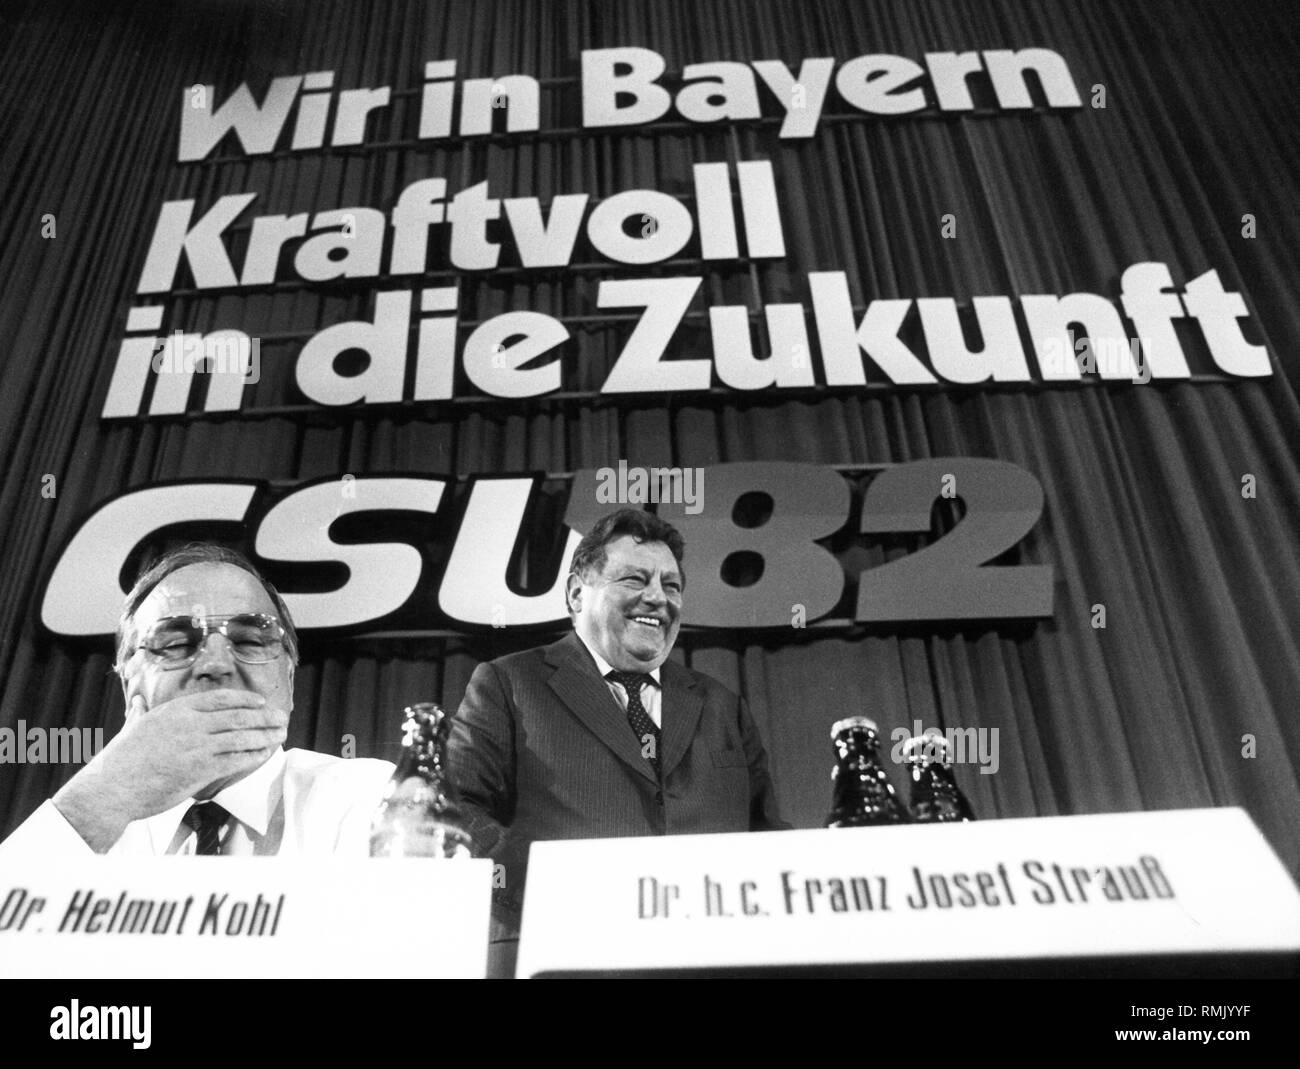 Helmut Kohl und Franz Josef Strauß auf dem Parteitag der CSU (Christlich Soziale Union in Bayern) in München. Auf der Rückseite eine Kampagne Slogan "Wir in Bayern, kraftvoll in die Zukunft" (Wir in Bayern, stark in die Zukunft"). Stockfoto